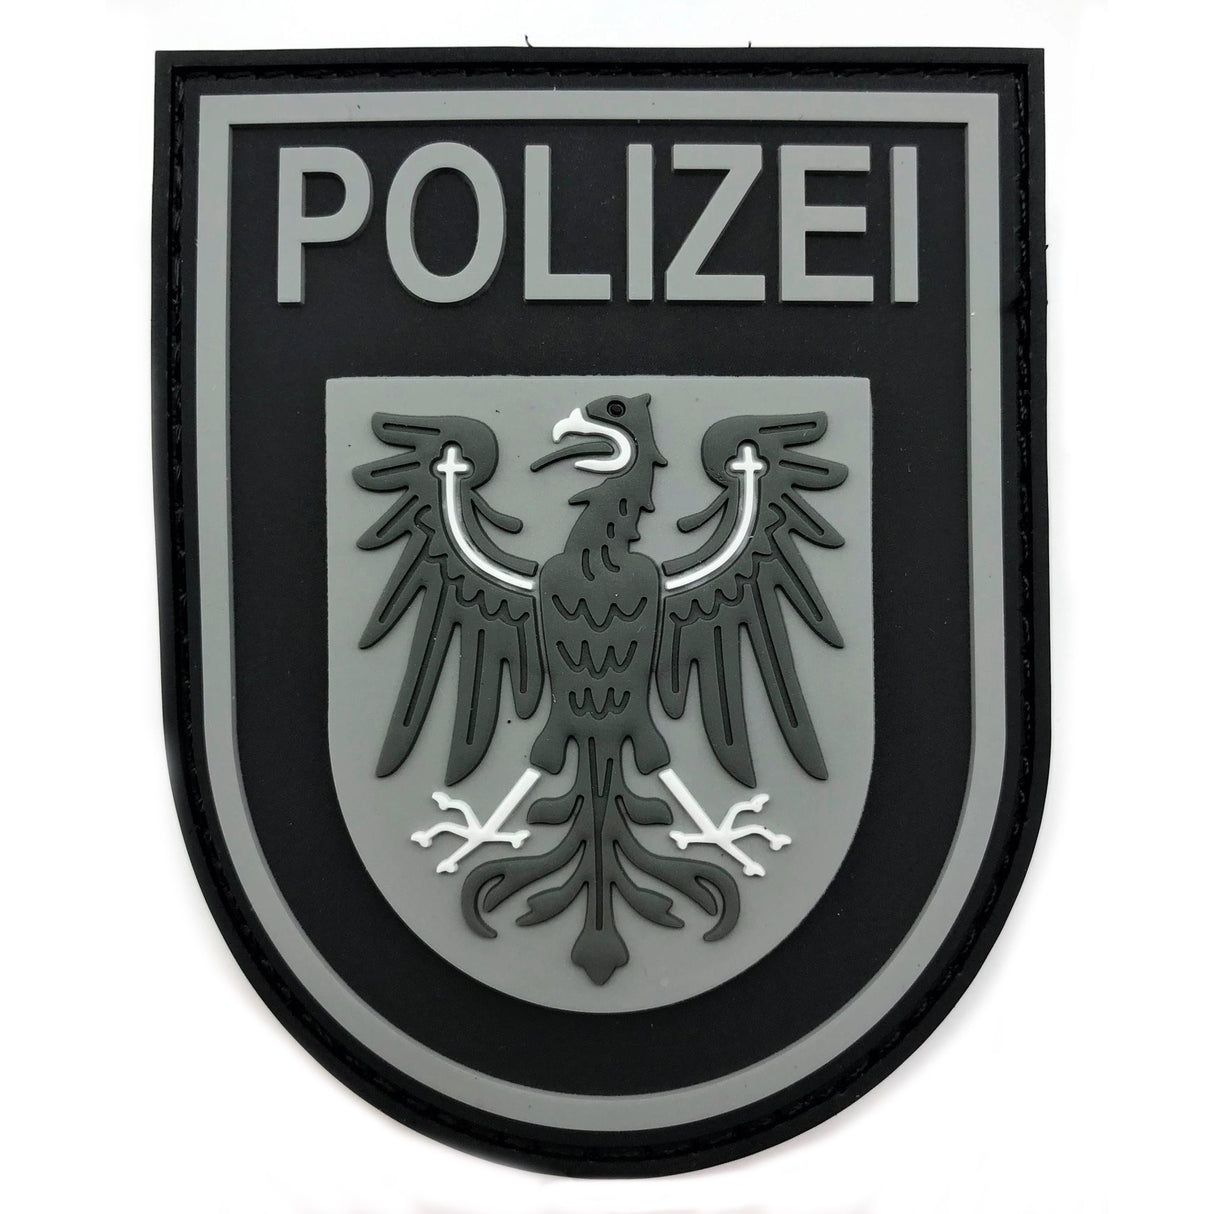 Polizei Brandenburg "Black Ops" Patch - Gears & Patches GmbH